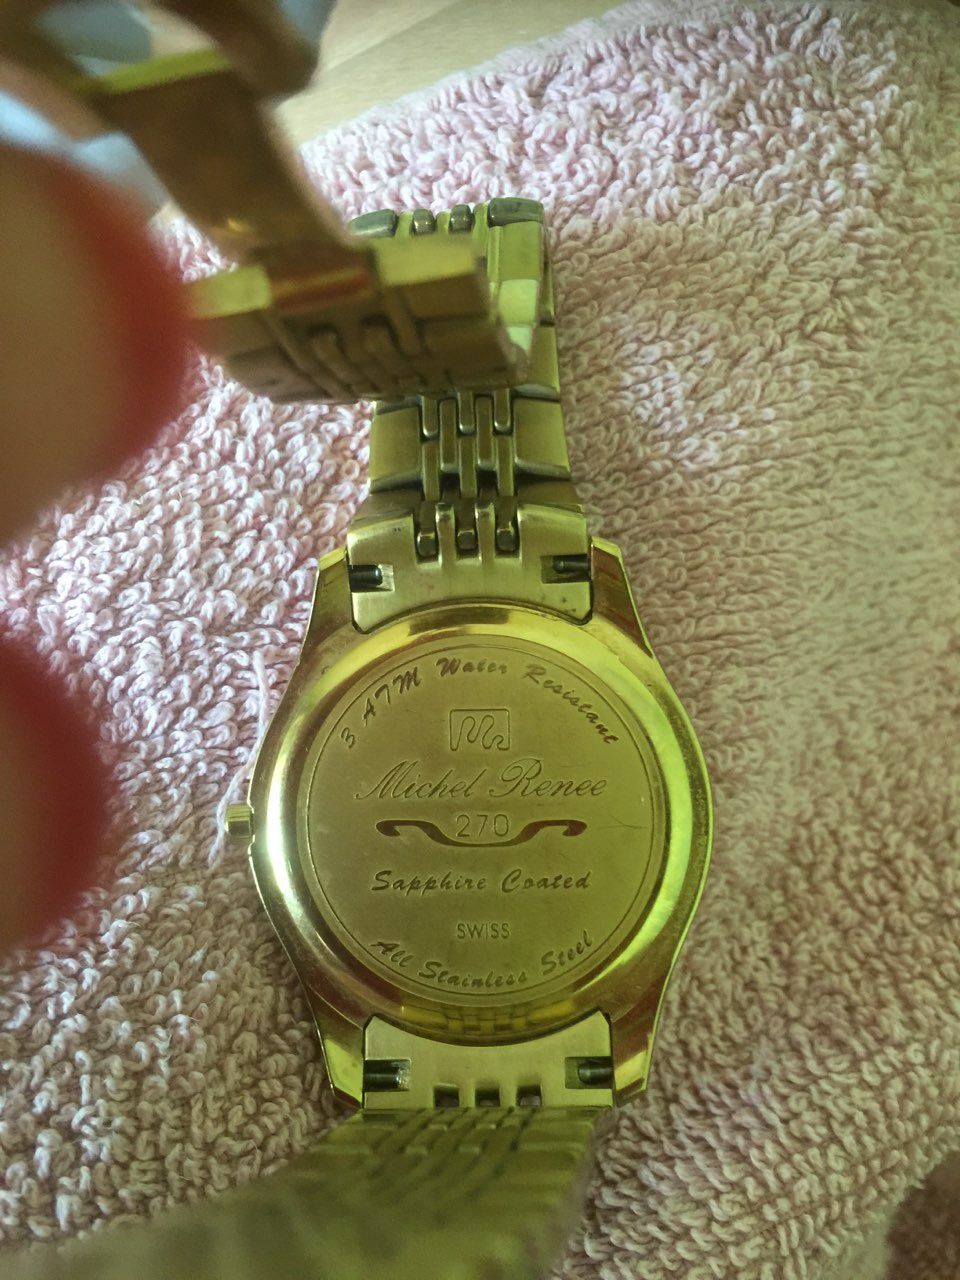 Мужские часы Michel Renee 270 в отличном состоянии